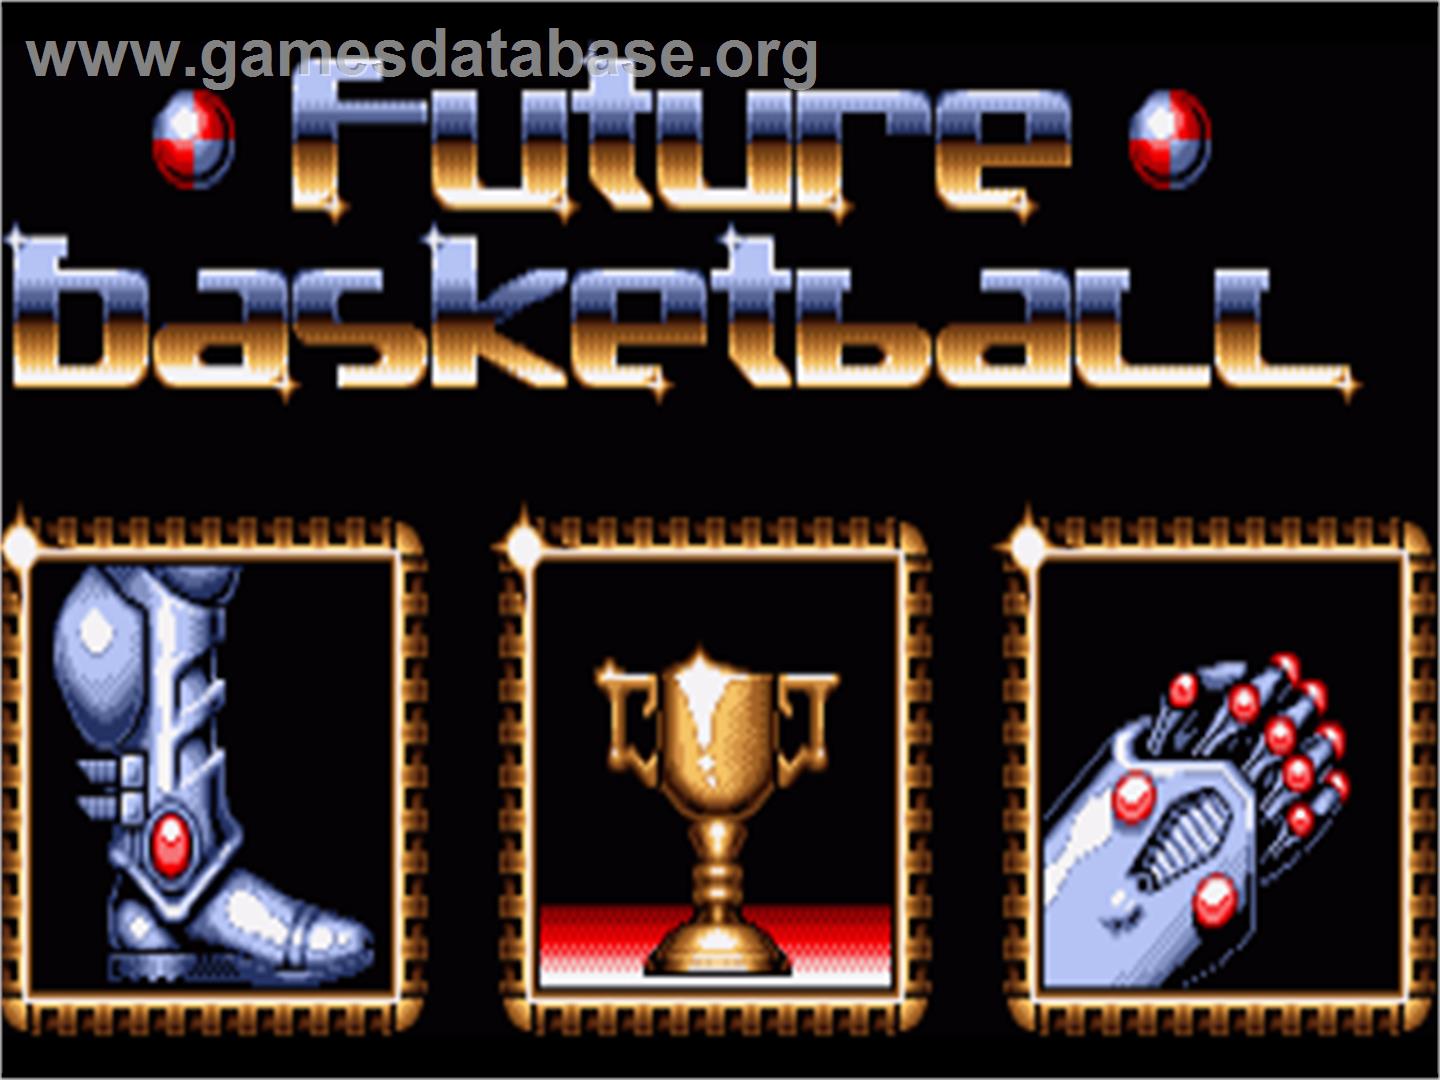 Future Basketball - Commodore Amiga - Artwork - Title Screen